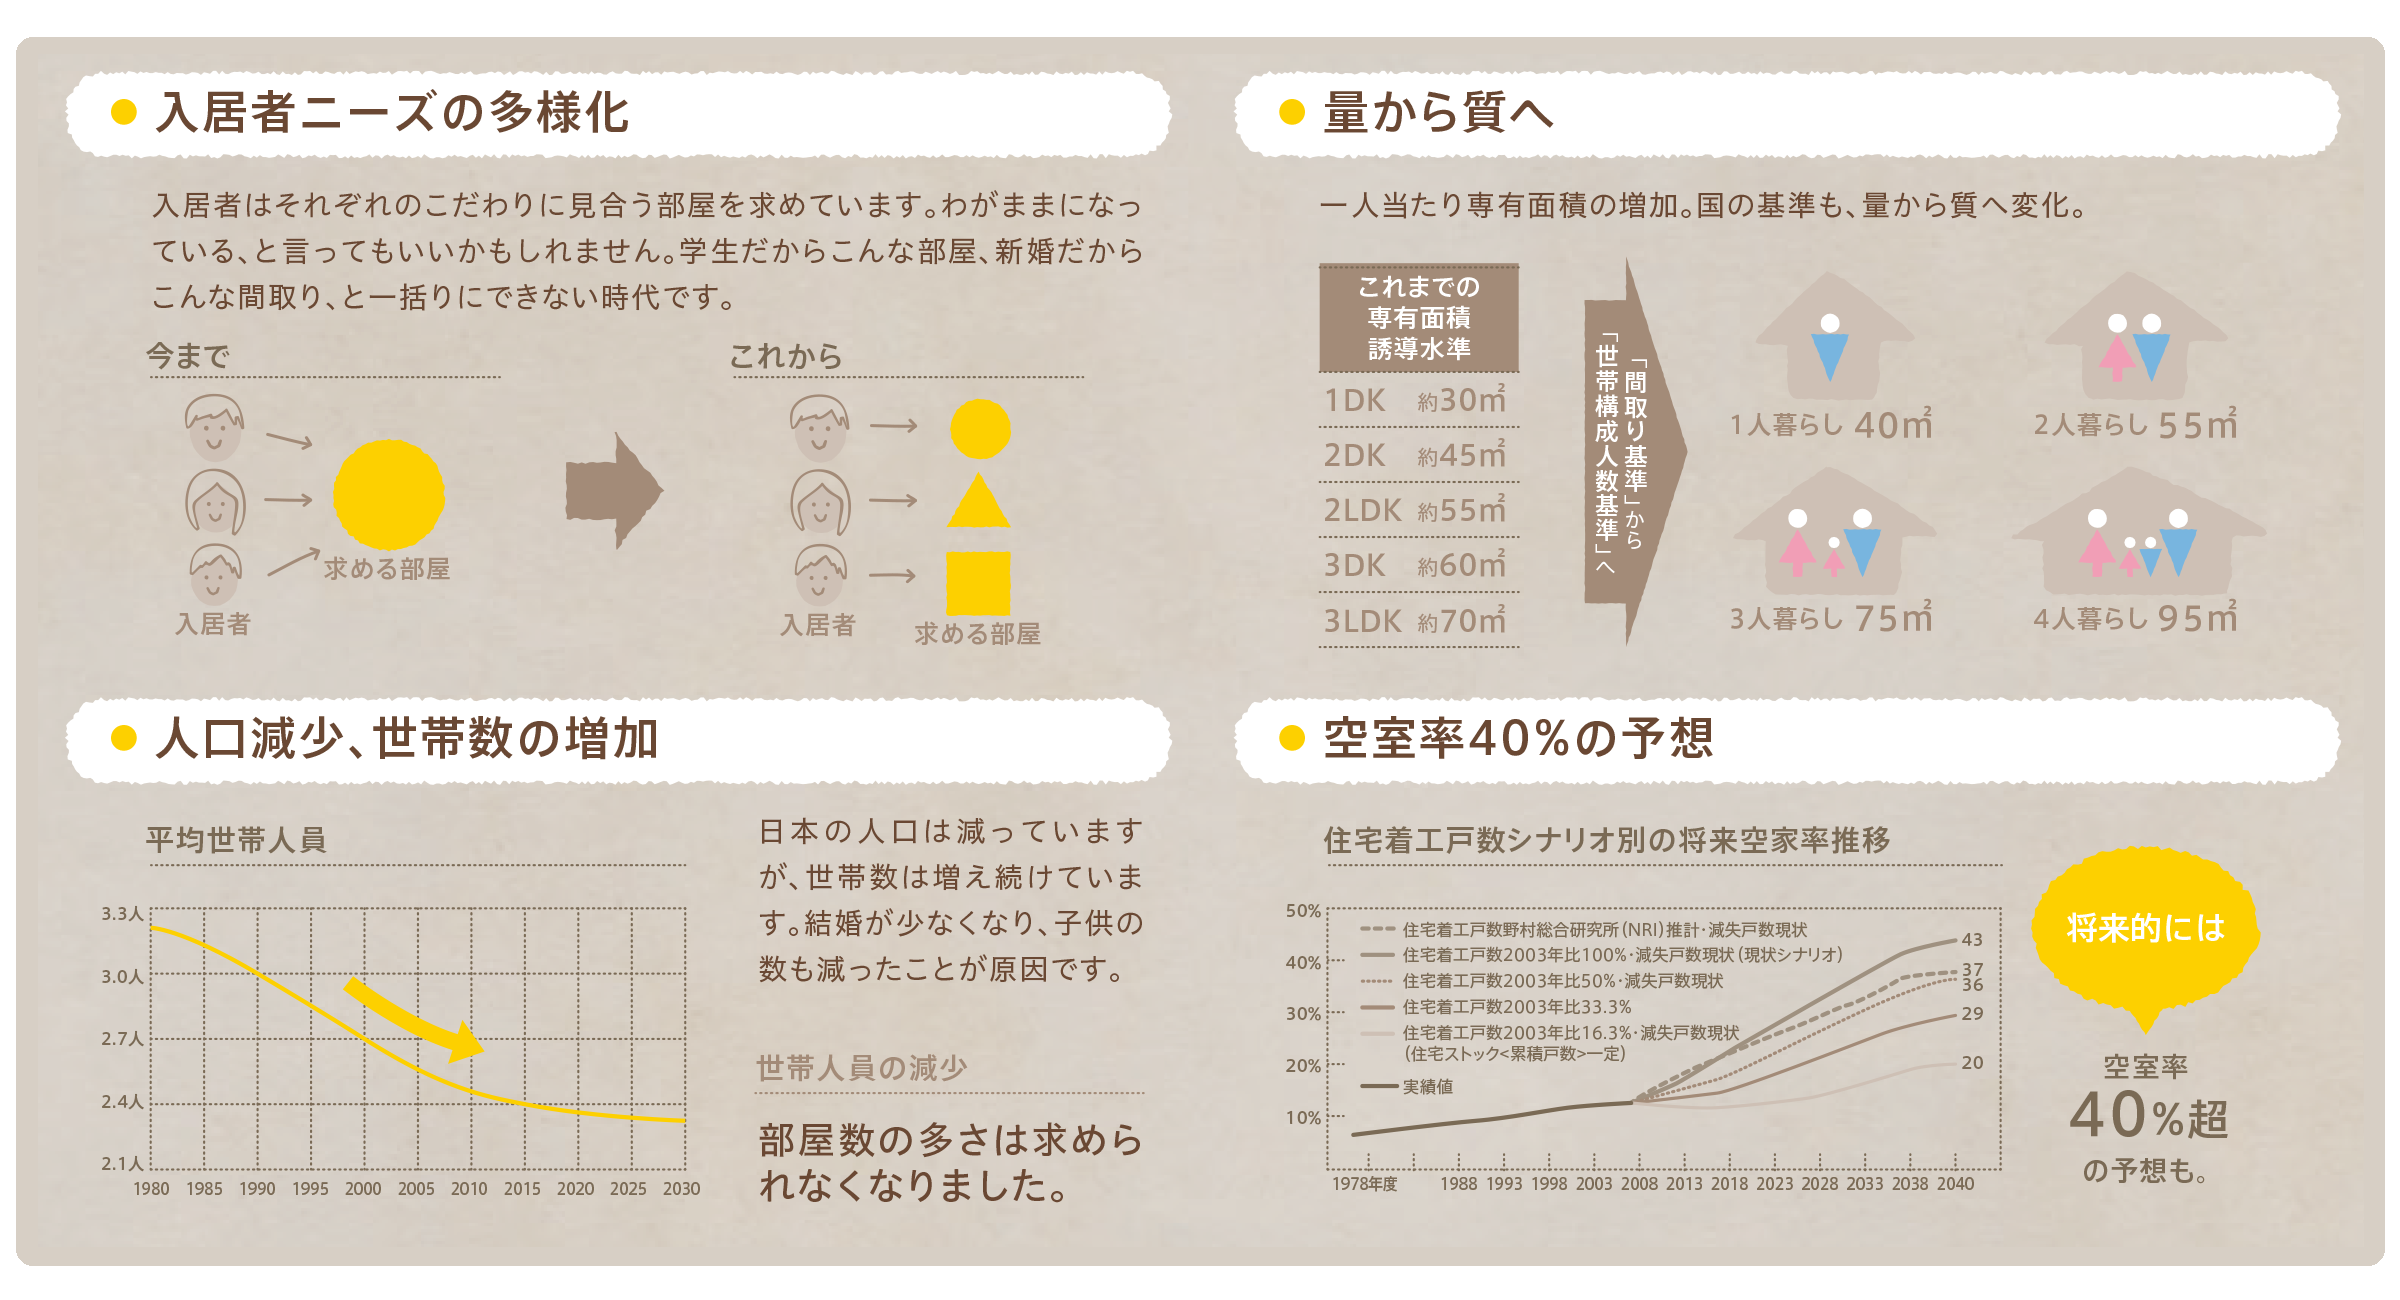 入居者のニーズは確実に変化しています。将来空室４０％もありえます。そんな状況を打破する為には入居者ターゲットを変えたリノベーション・リフォームこそが重要です。収益改善のReno-ba（大阪・東京）を！